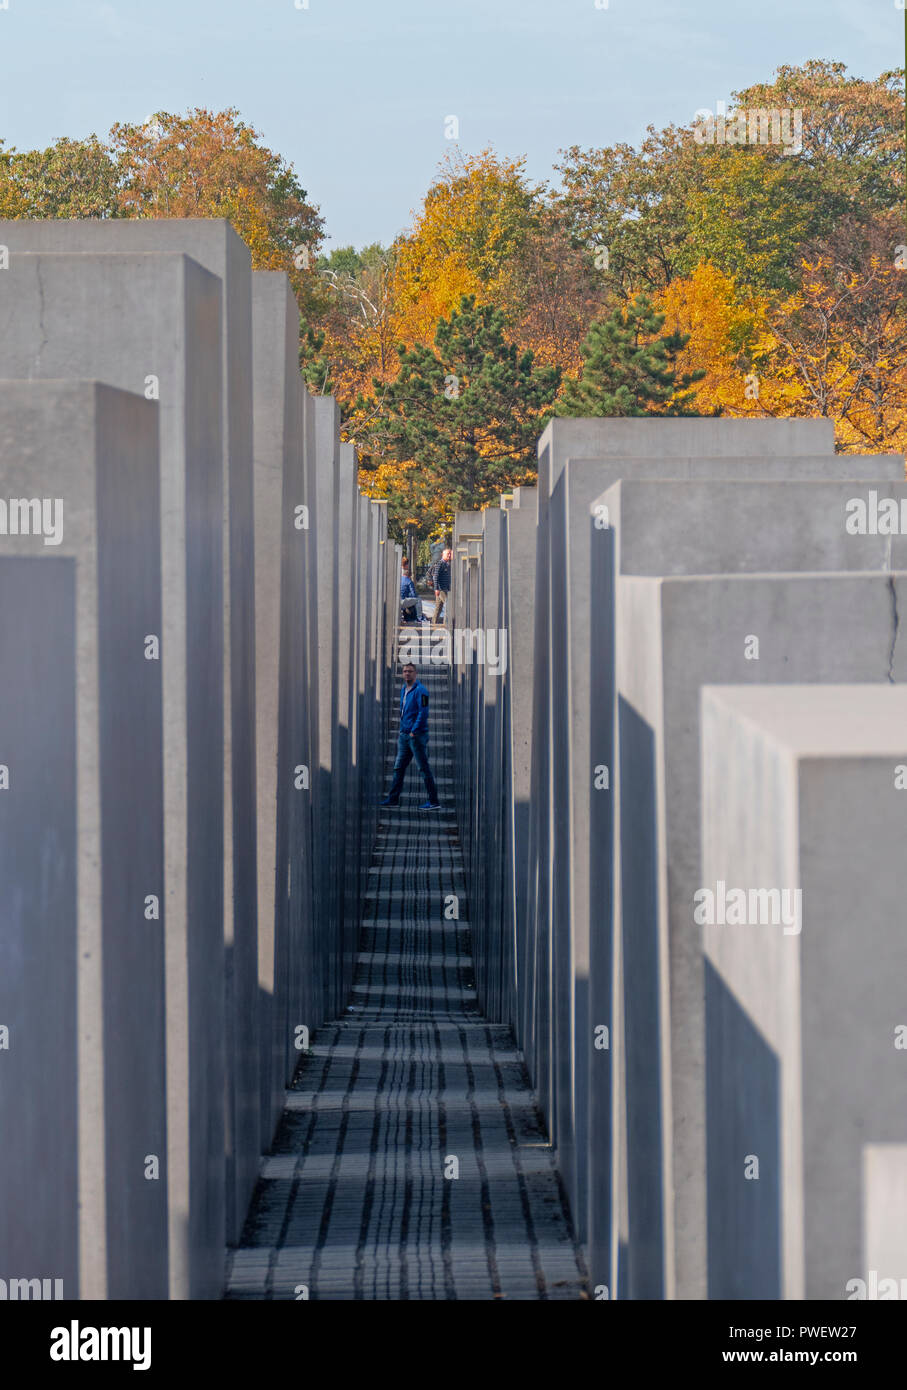 Le Mémorial aux Juifs assassinés d'Europe, également connu comme le mémorial de l'Holocauste à Berlin, Allemagne. Banque D'Images